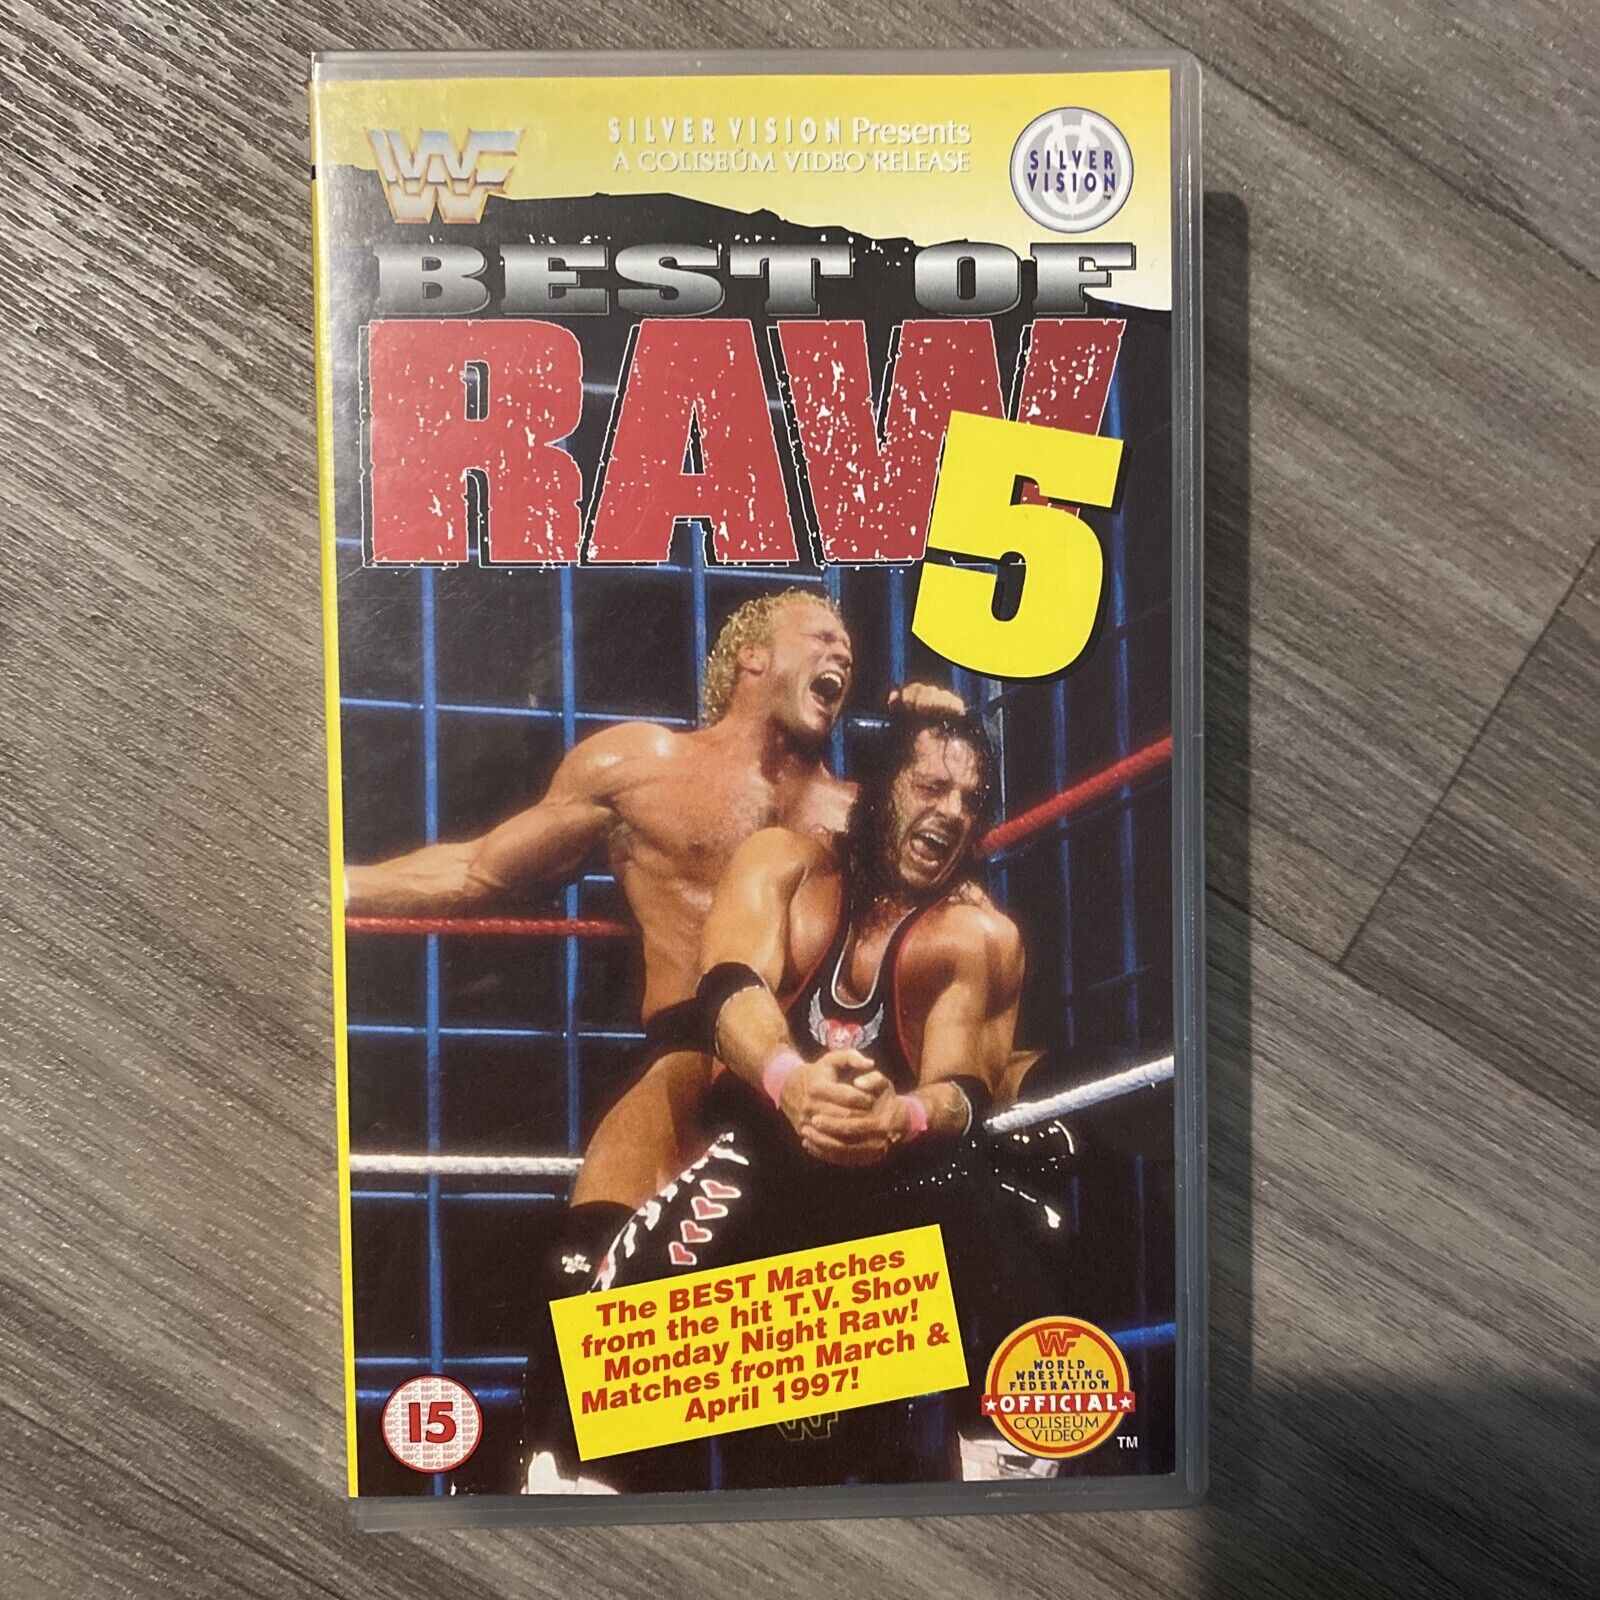 WWF BEST OF RAW 5 - SILVER VISION -  VHS -  - WCW/ECW/WWE 